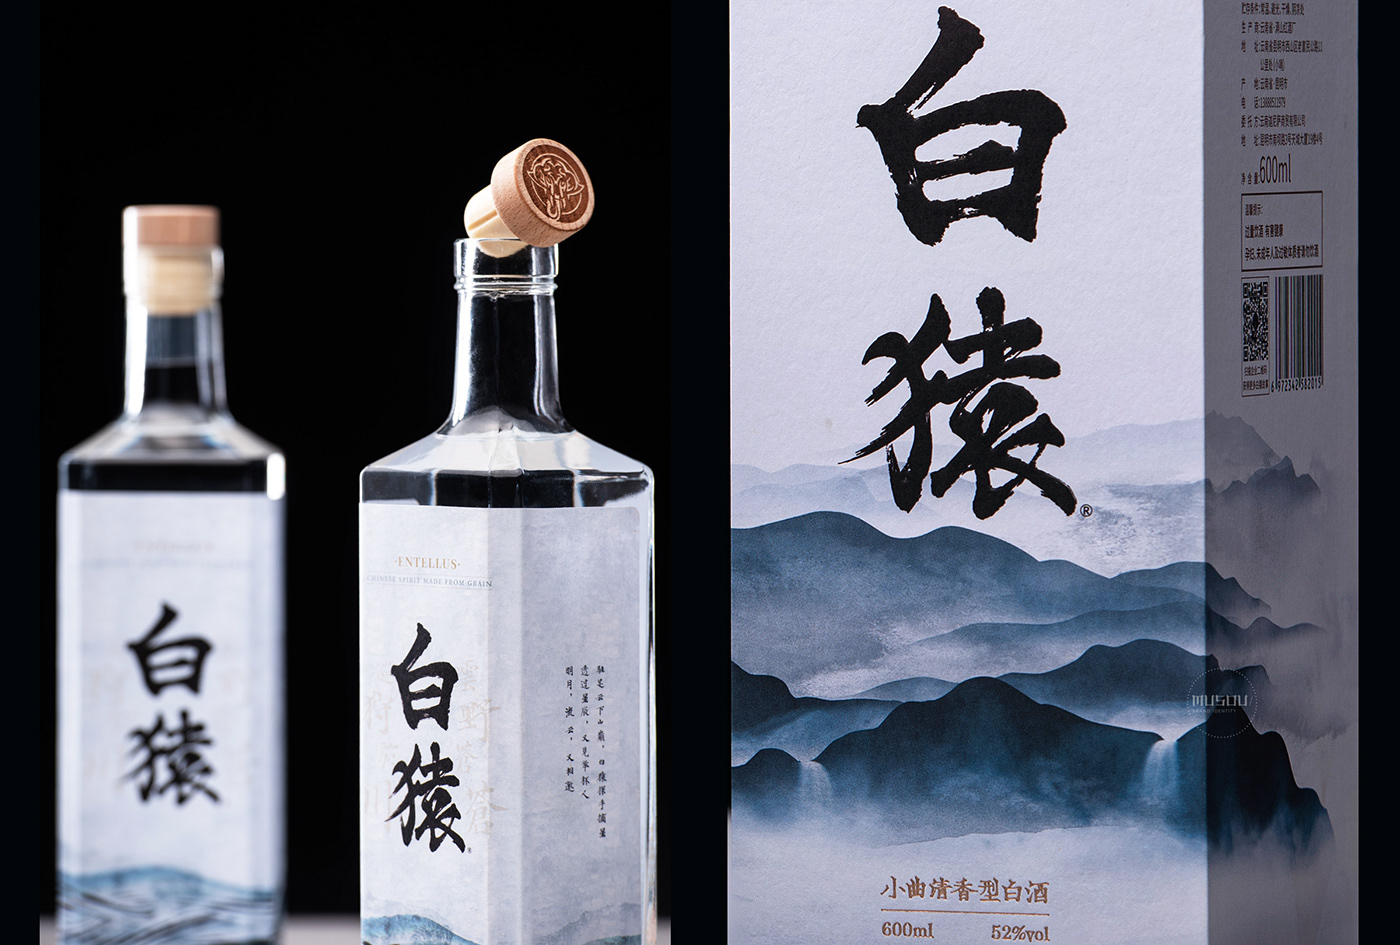 Chinese Liquor liquor package baijiu